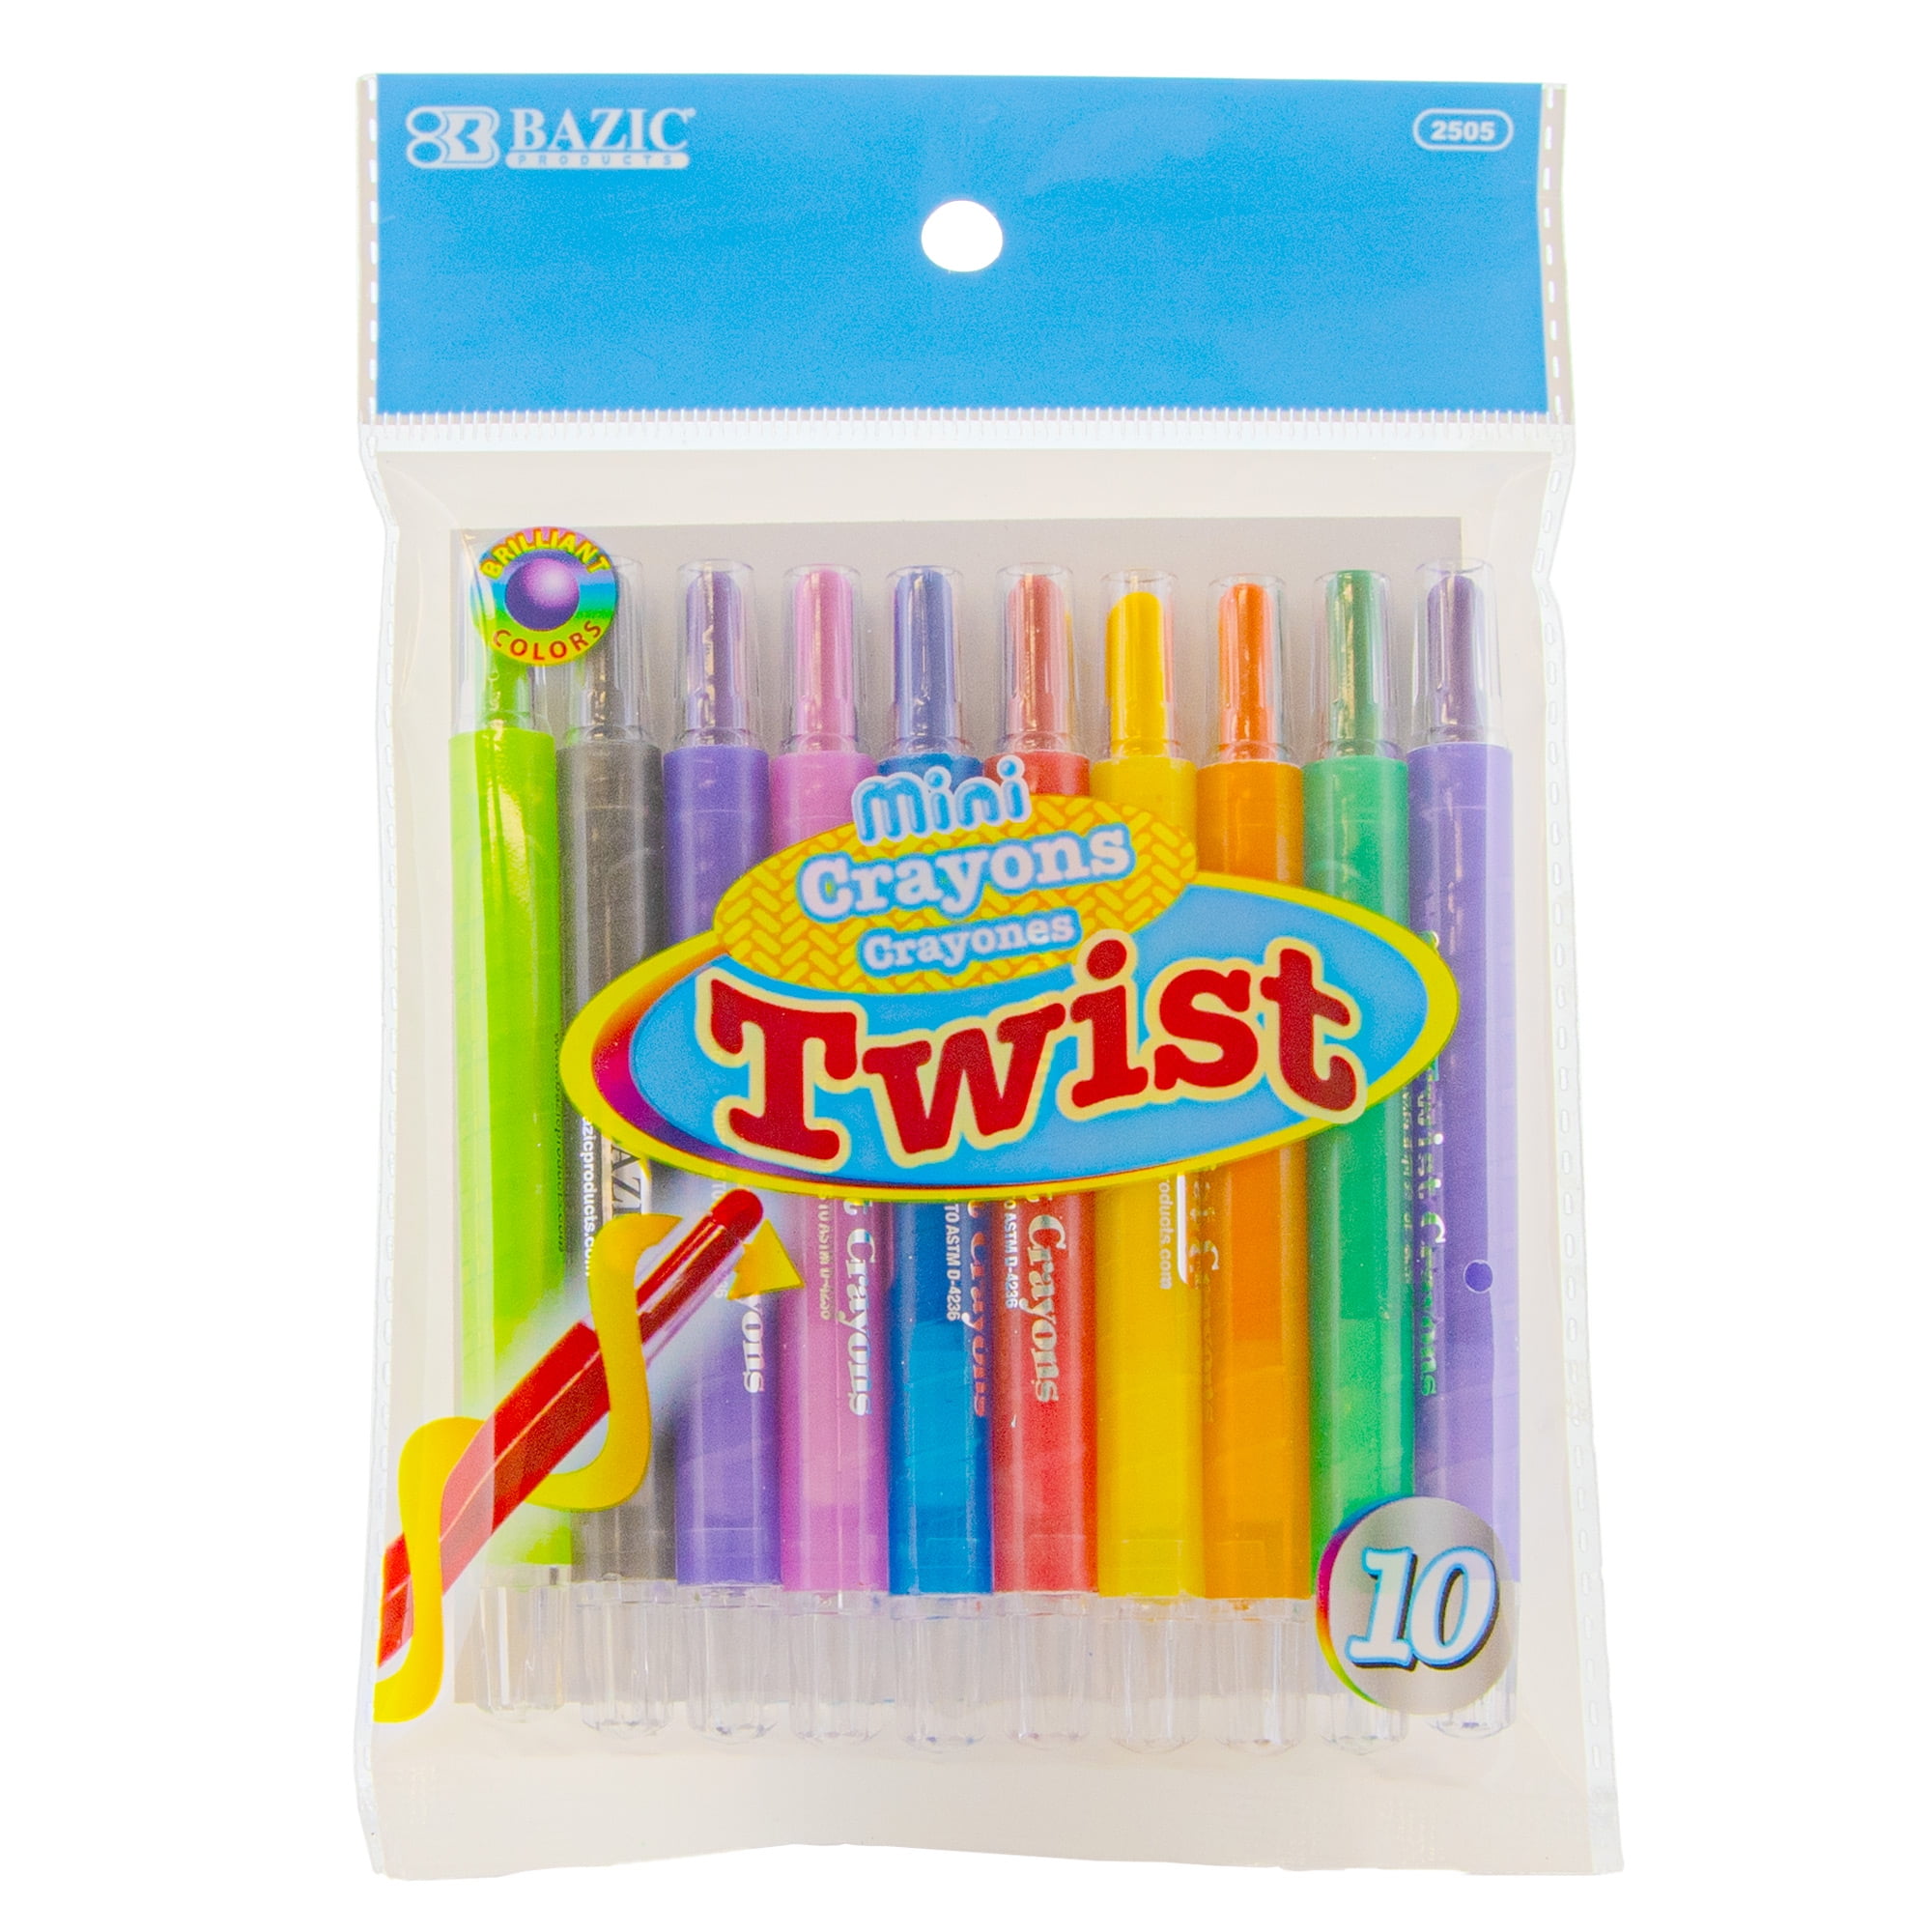 Retractable Twist Crayons 12Pc